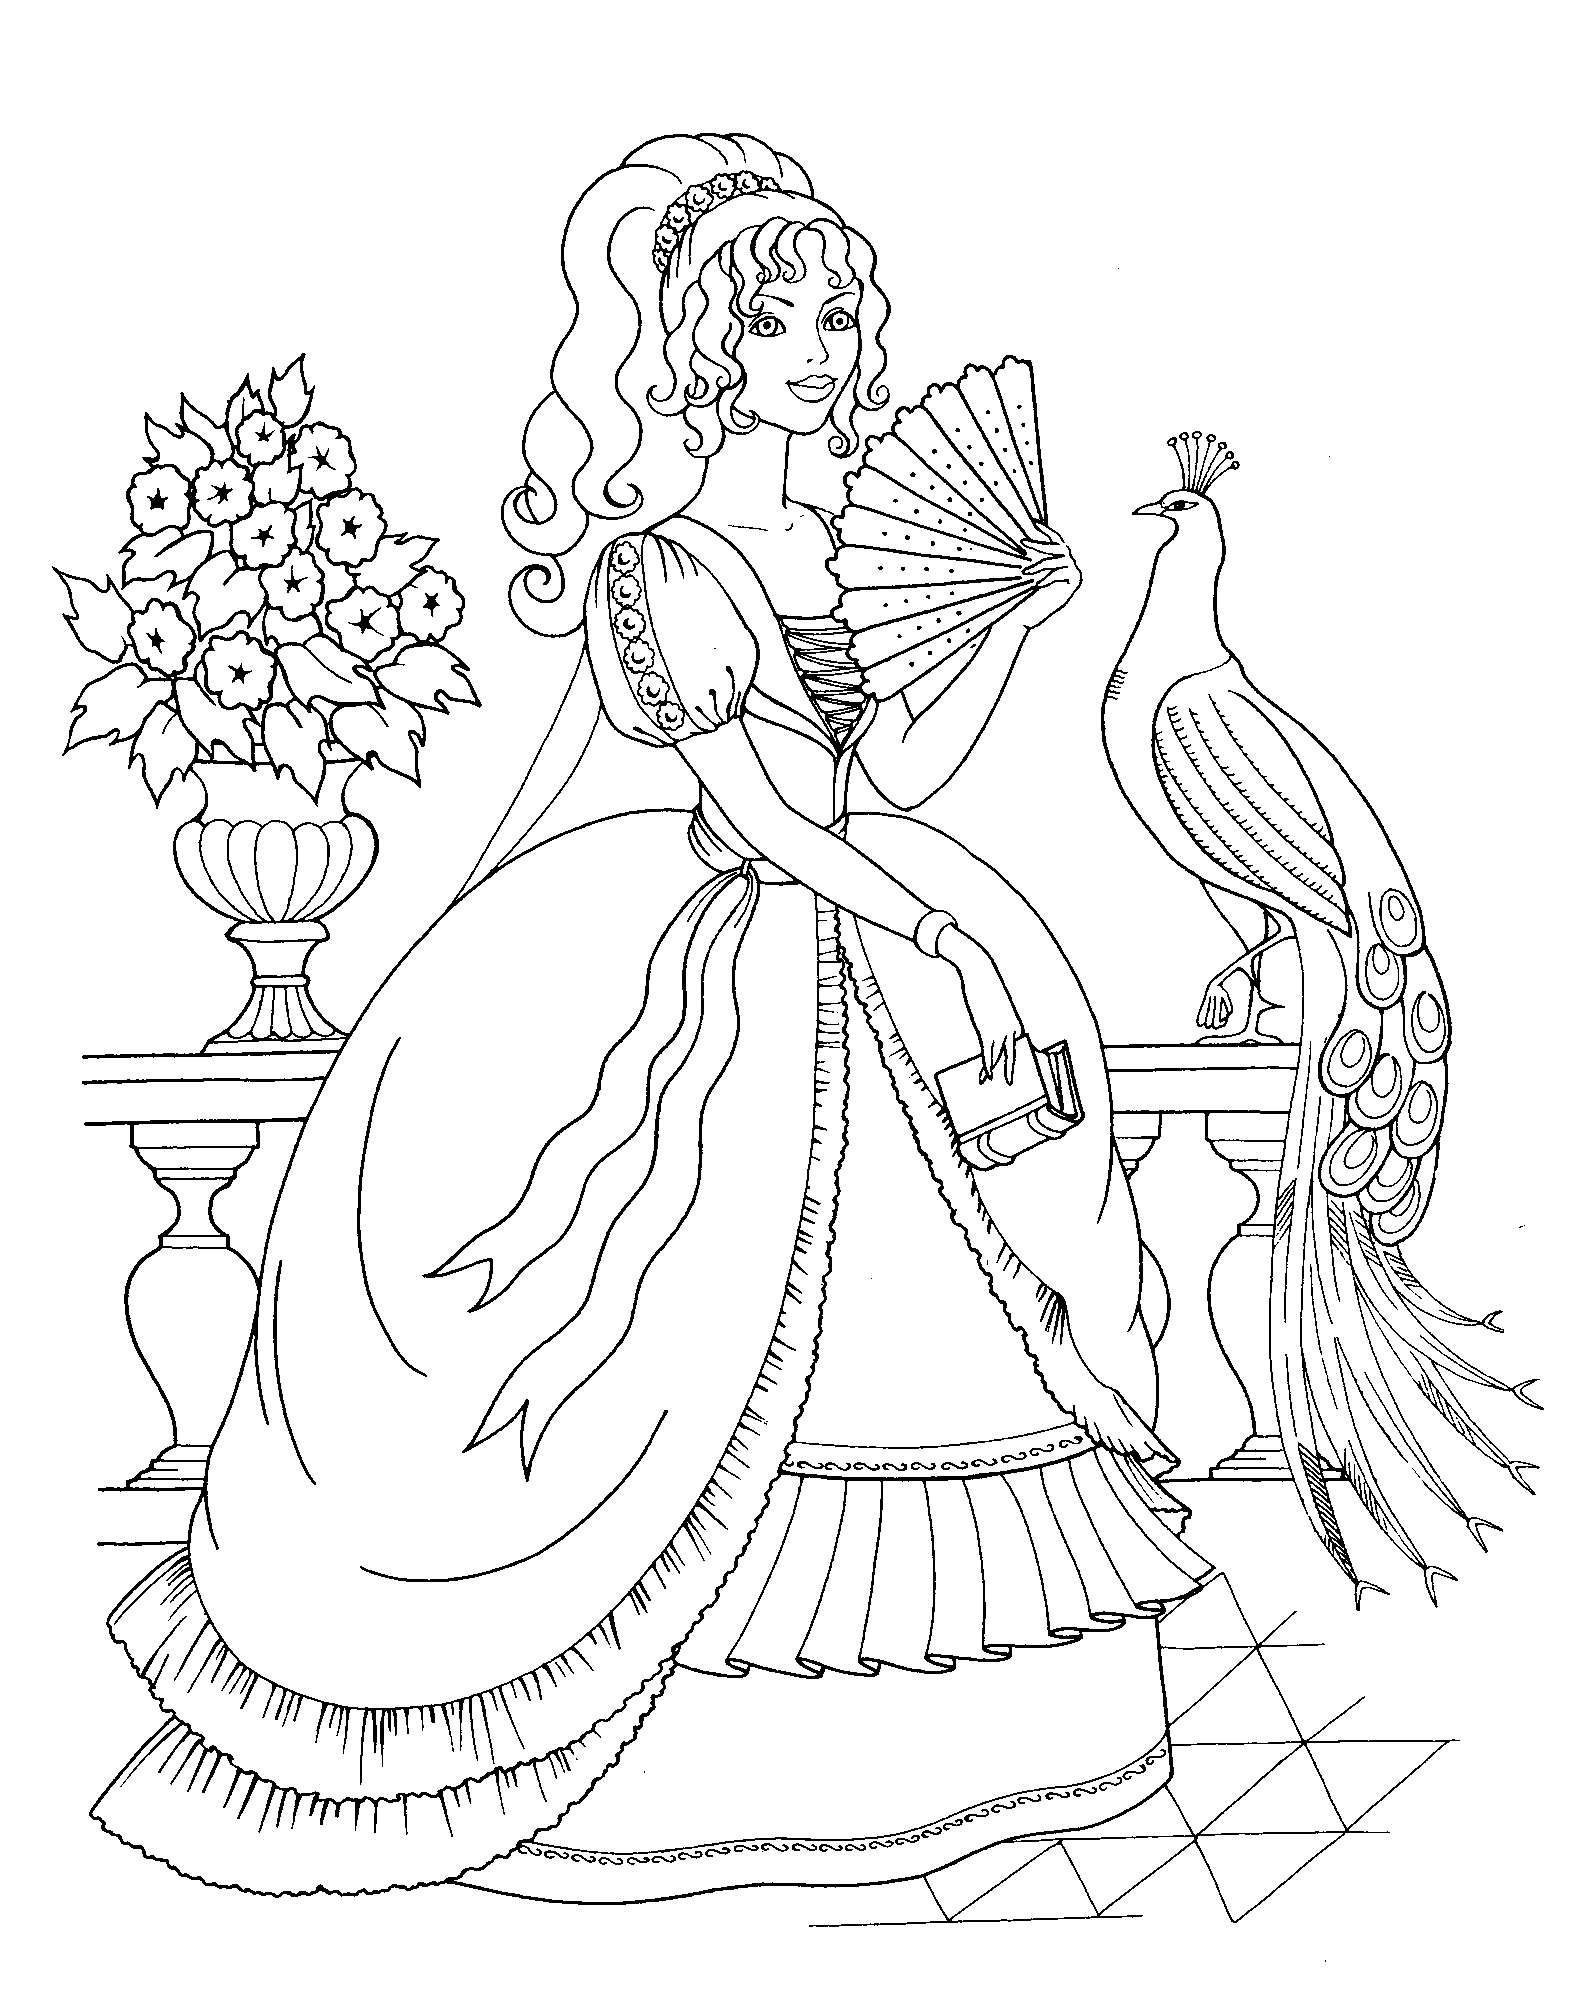 Desenhos para colorir de desenho de uma linda princesa para